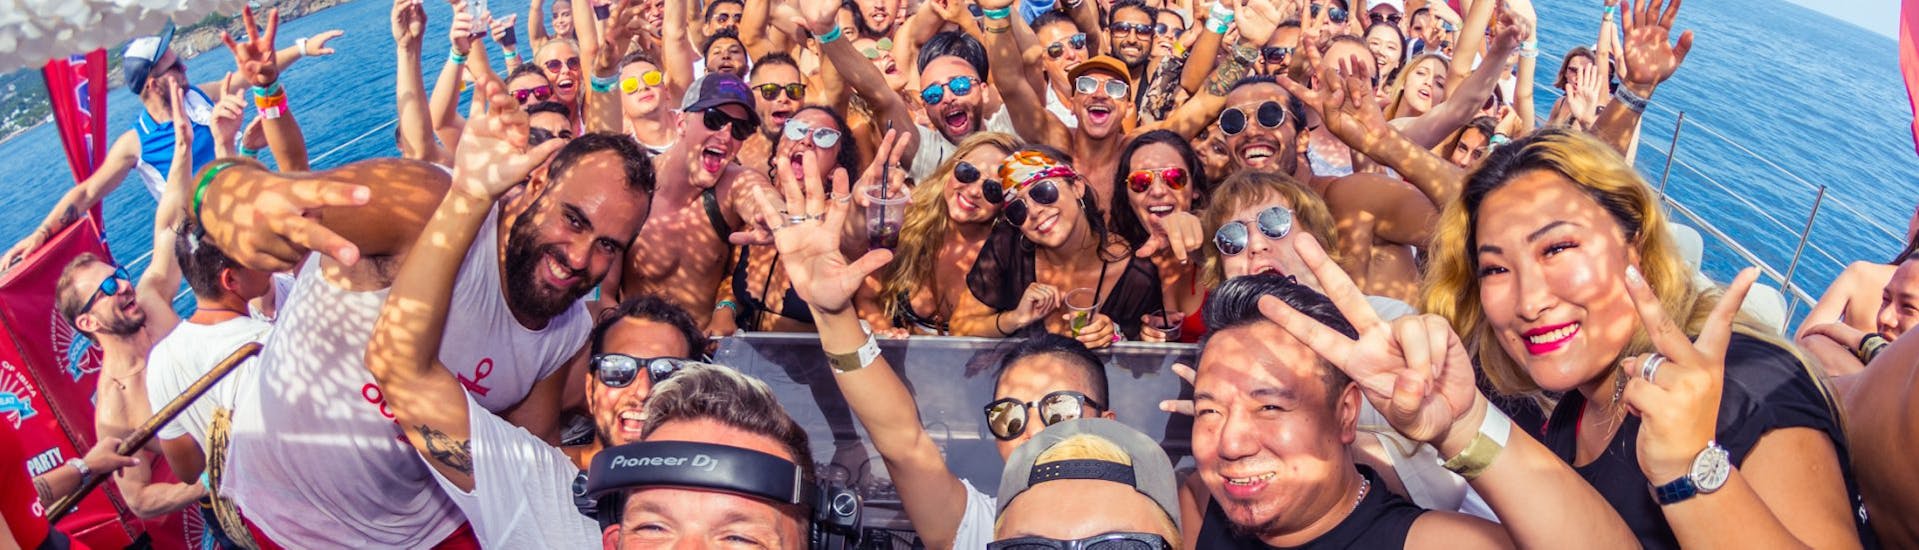 Personen und DJ haben Spaß bei der Party-Bootstour in Ibiza von Playa d'en Bossa mit offener Bar.